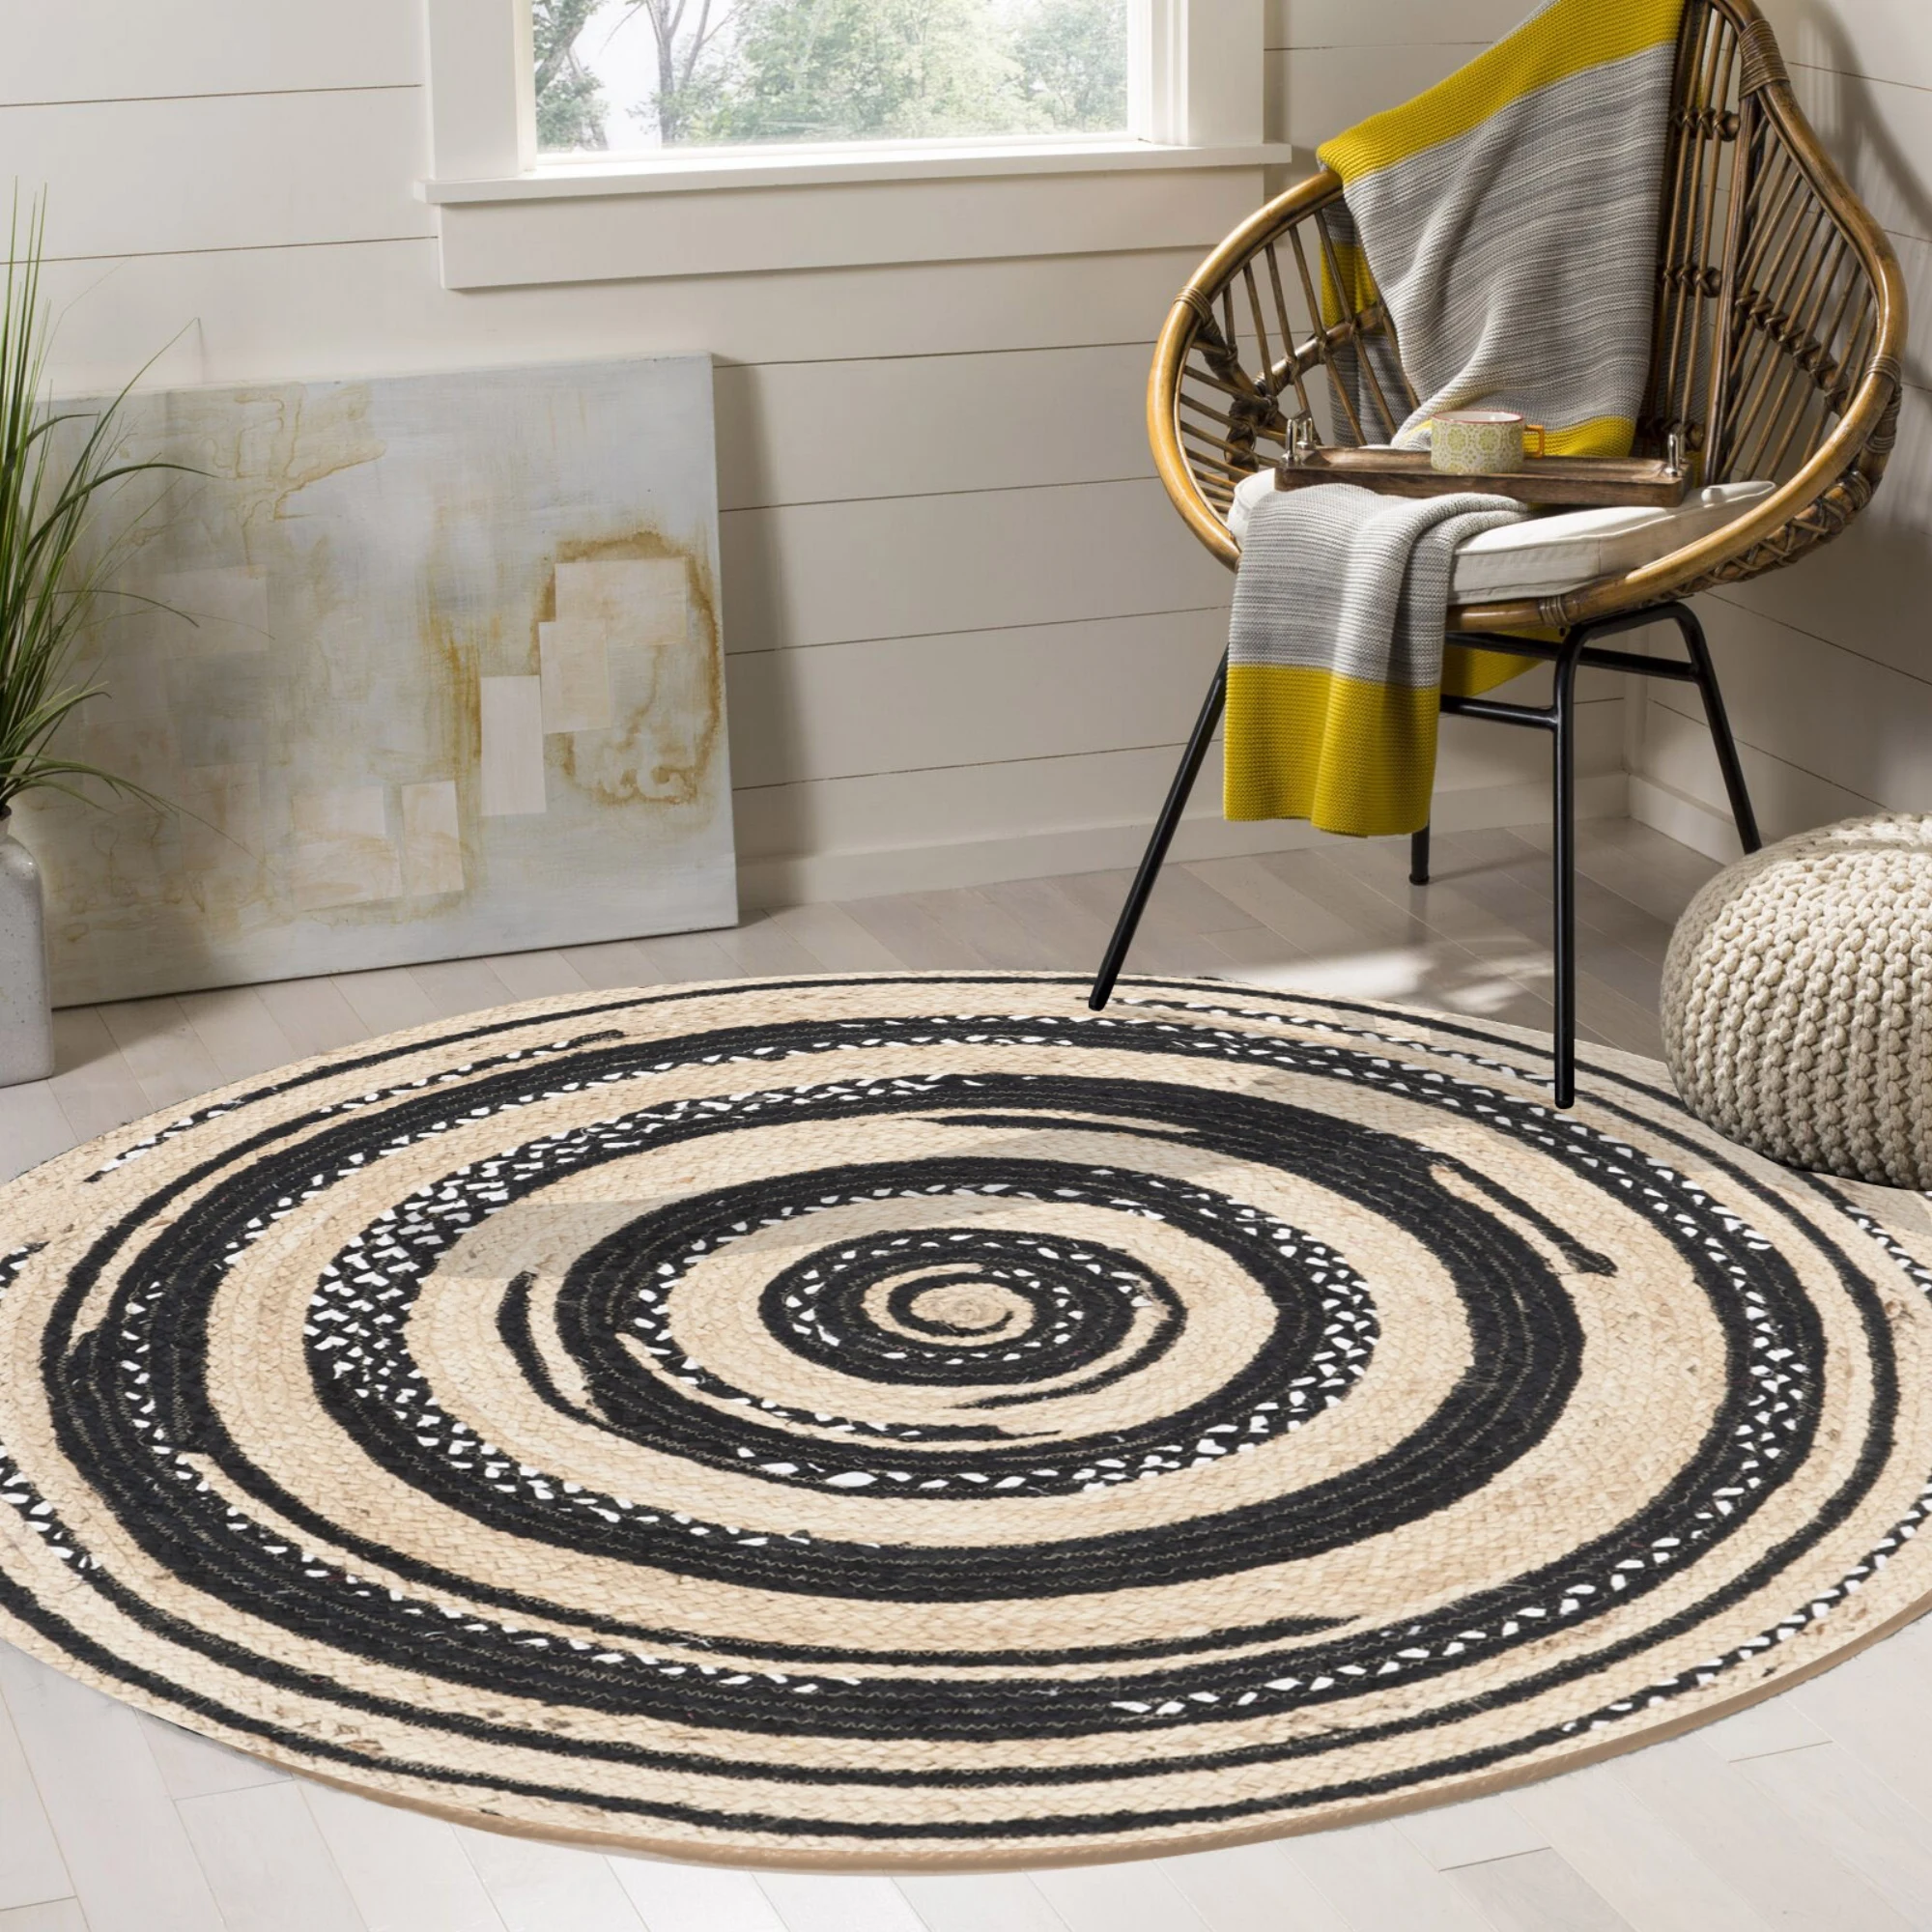 

Else Black Grey Circle Lines Sisal Handmade Flatweave Natural Jute Carpet Round Floor Mat Living Room Bedroom Sisal Area Rug